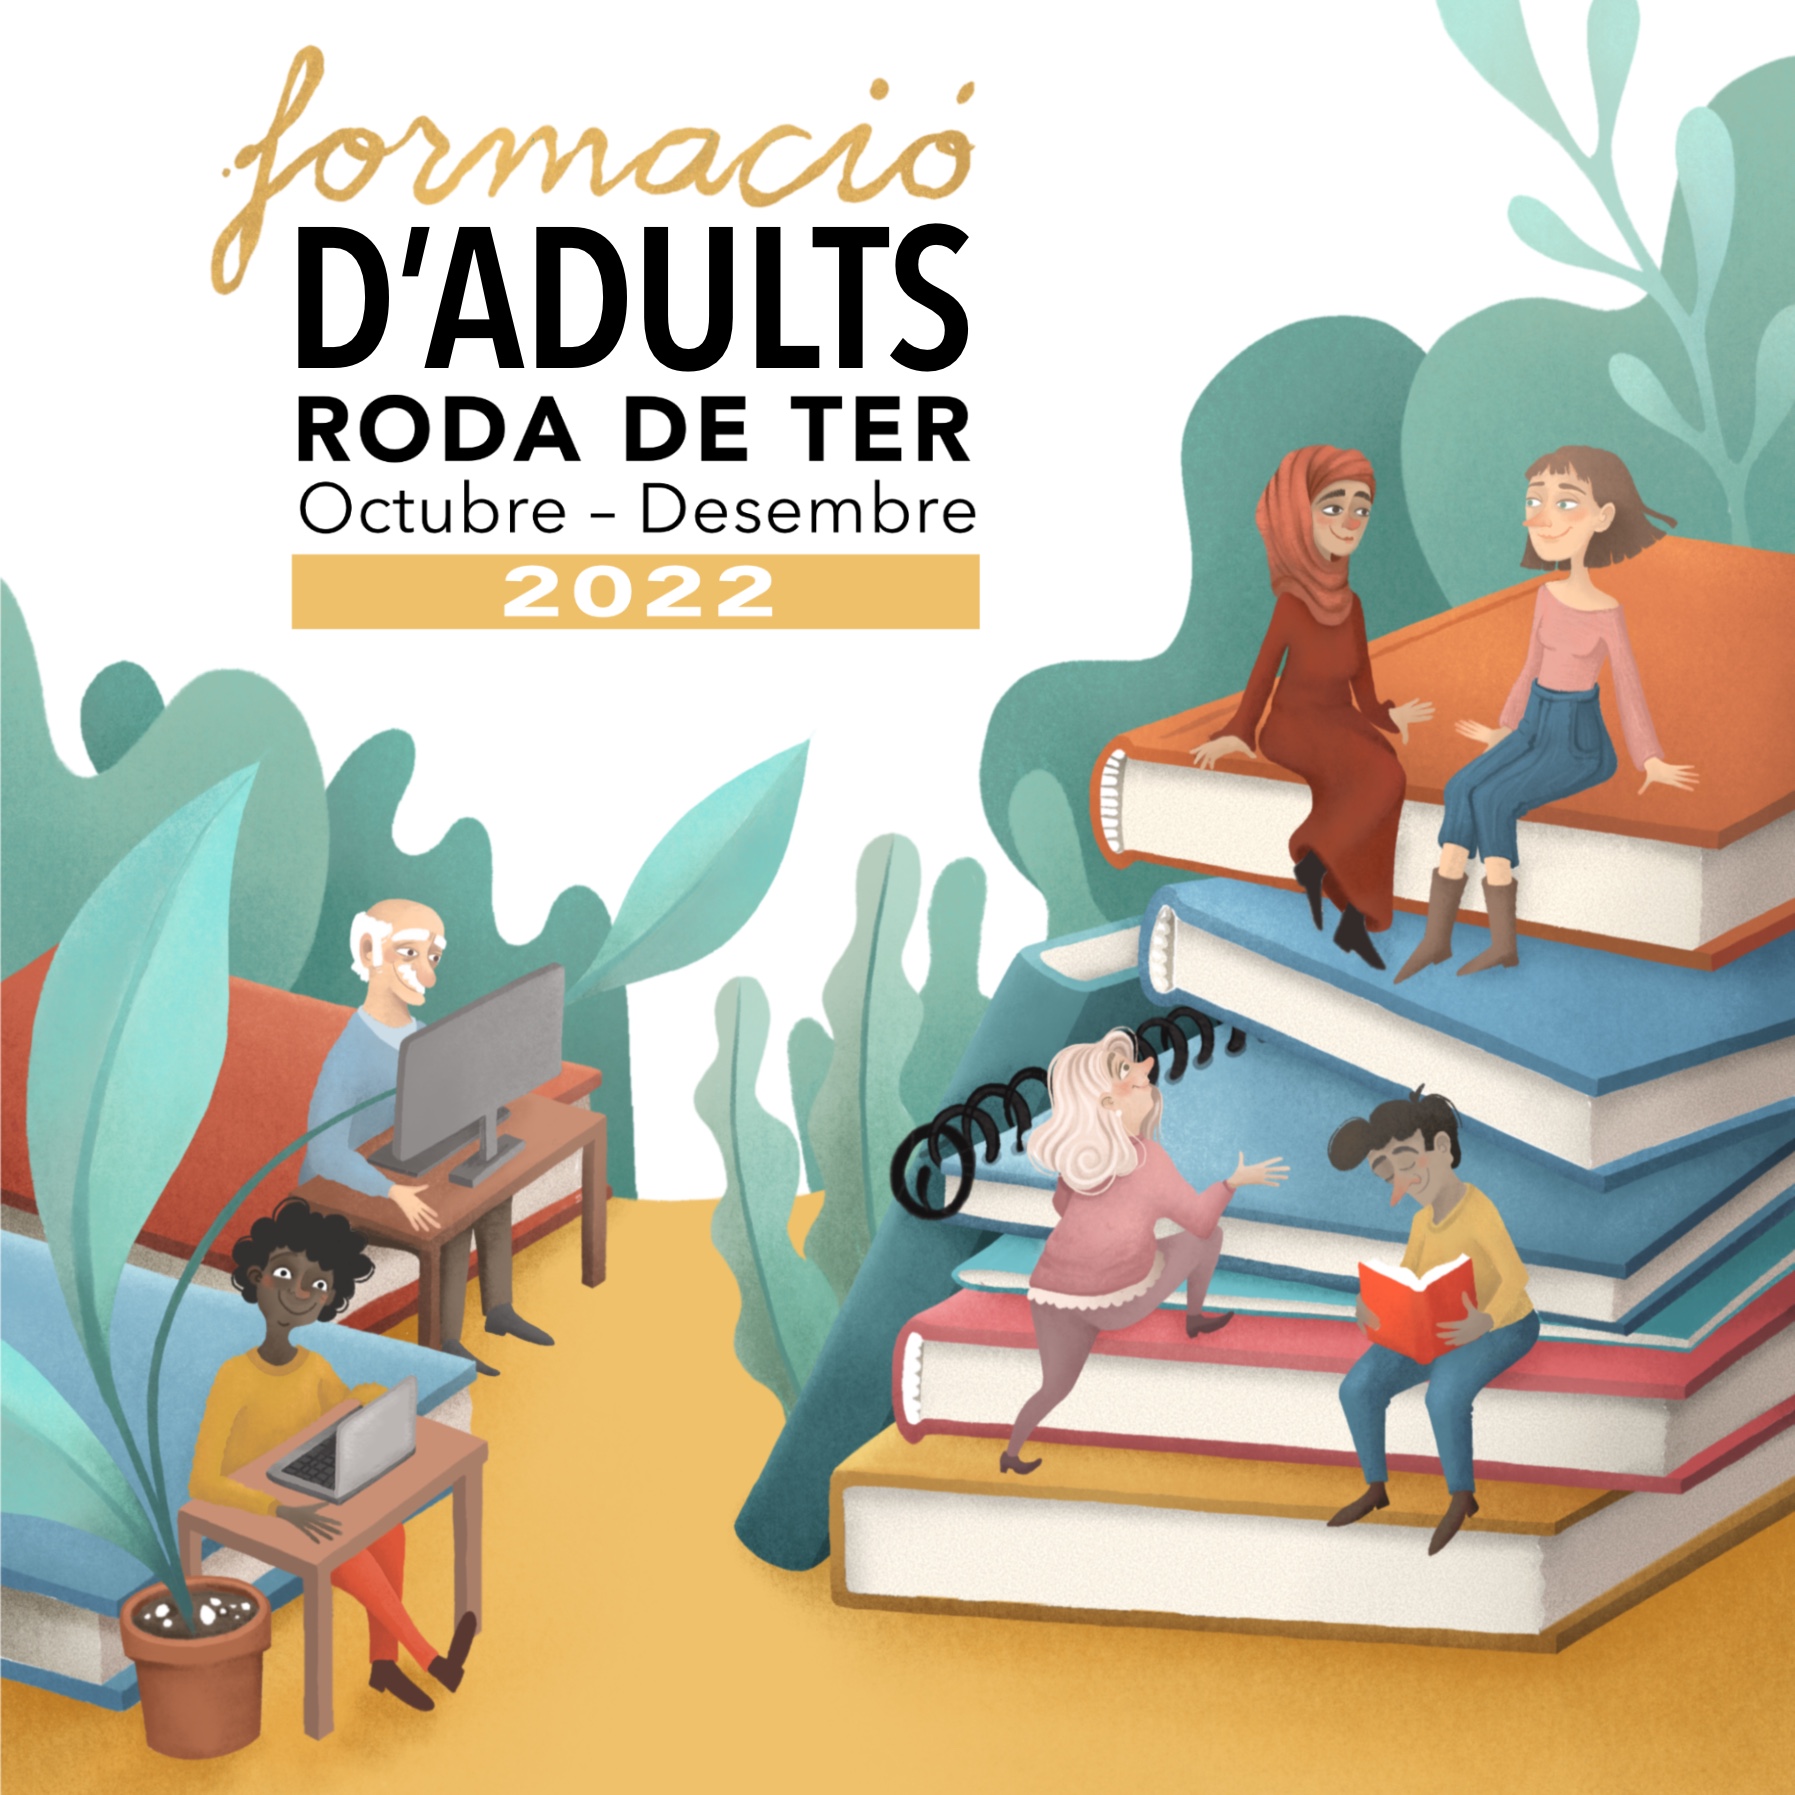 Formació d'adults a Roda de Ter: octubre-desembre 2022